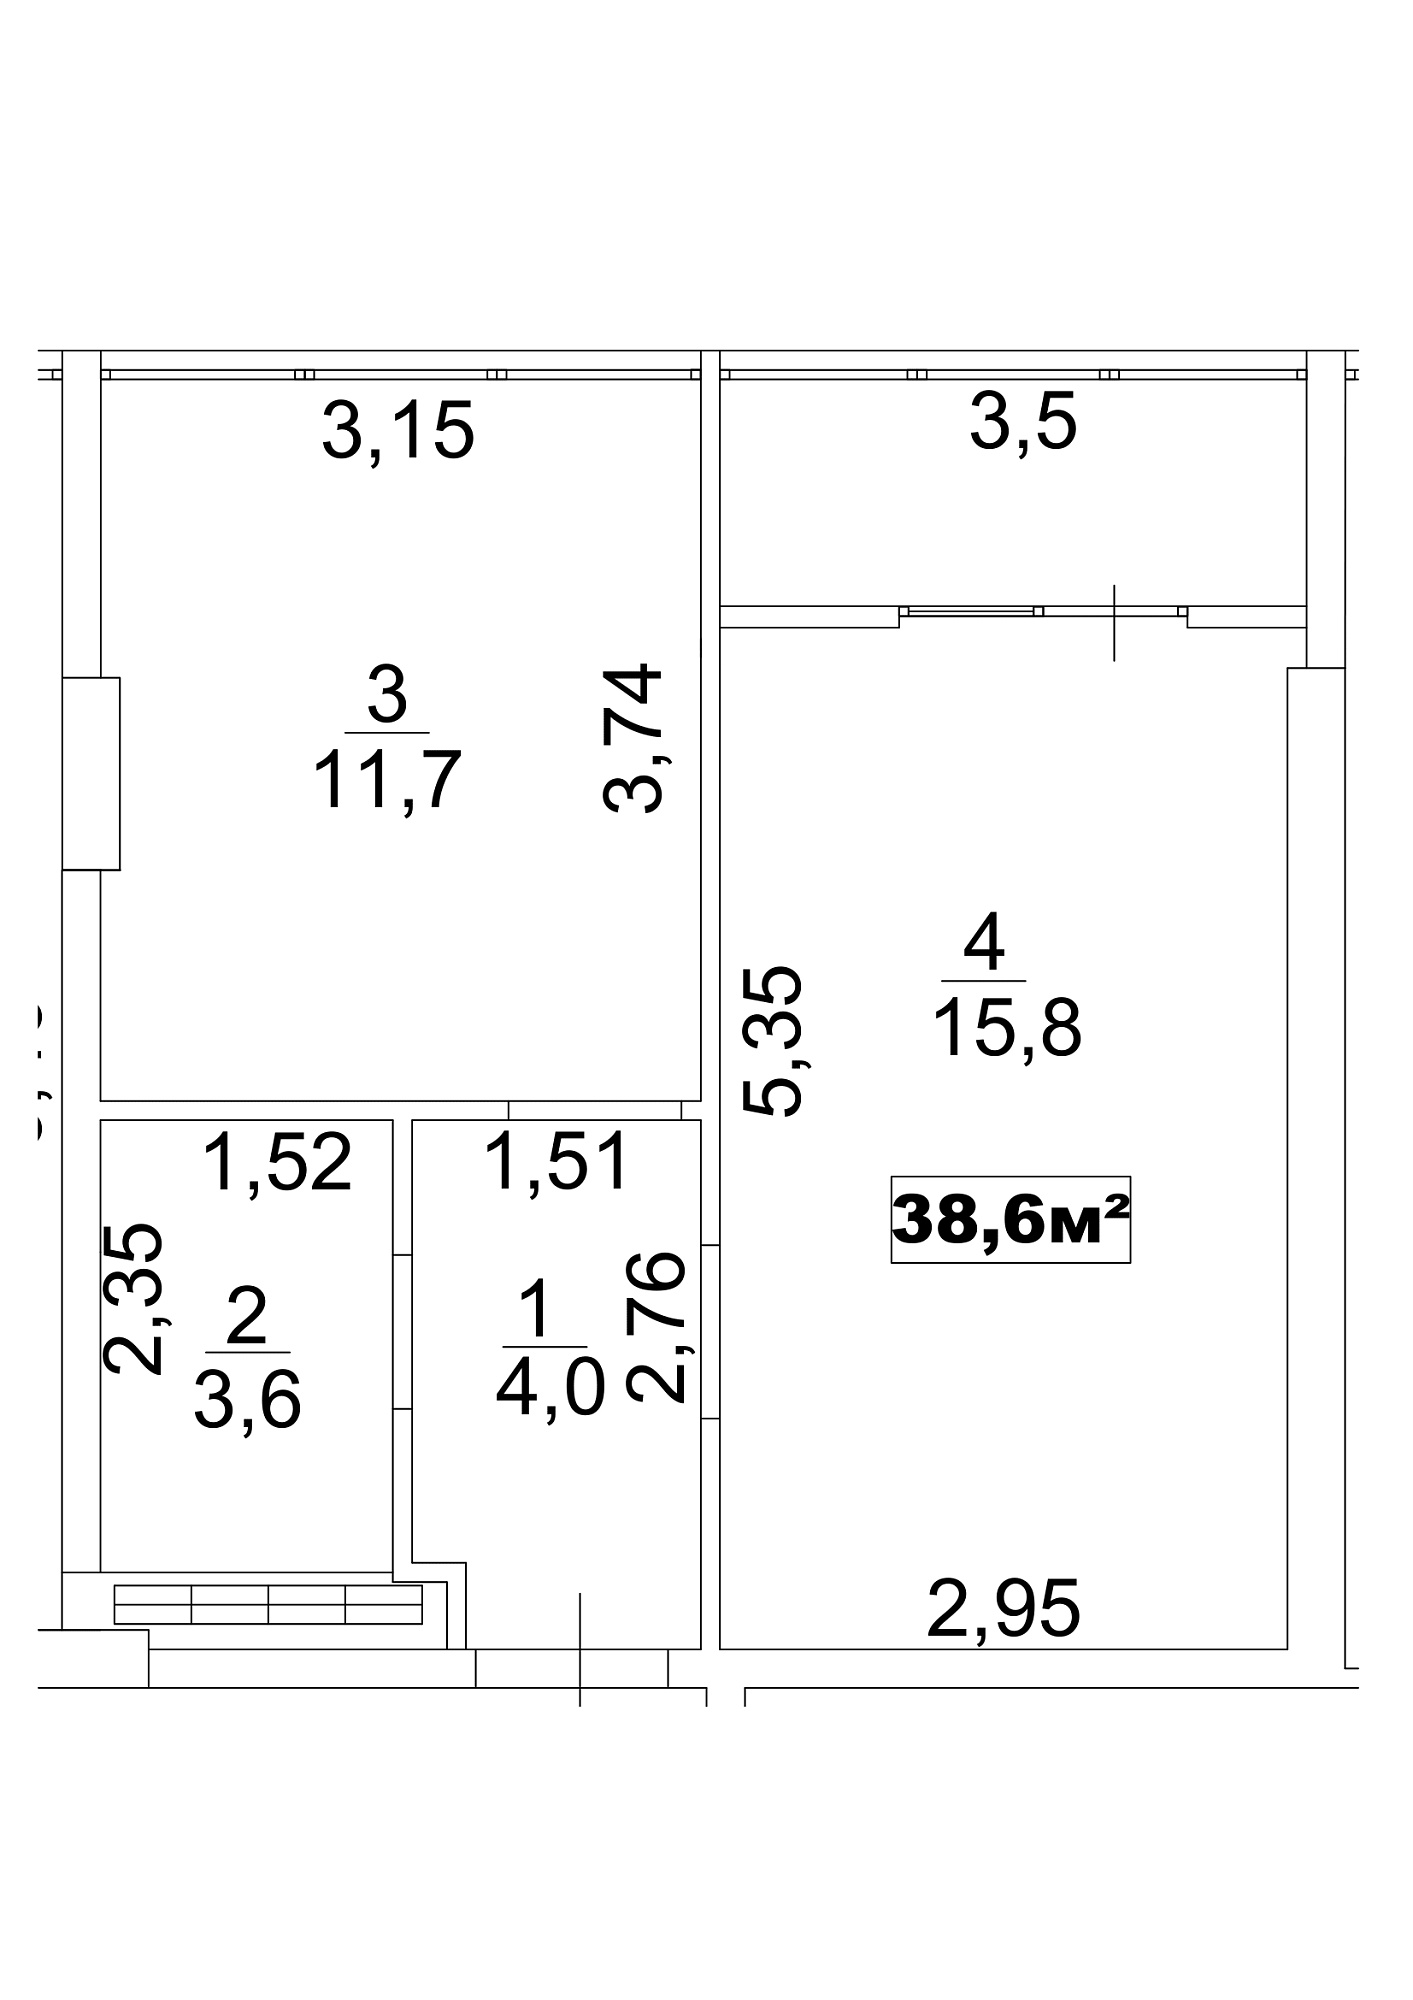 Планировка 1-к квартира площей 38.6м2, AB-13-08/0066а.